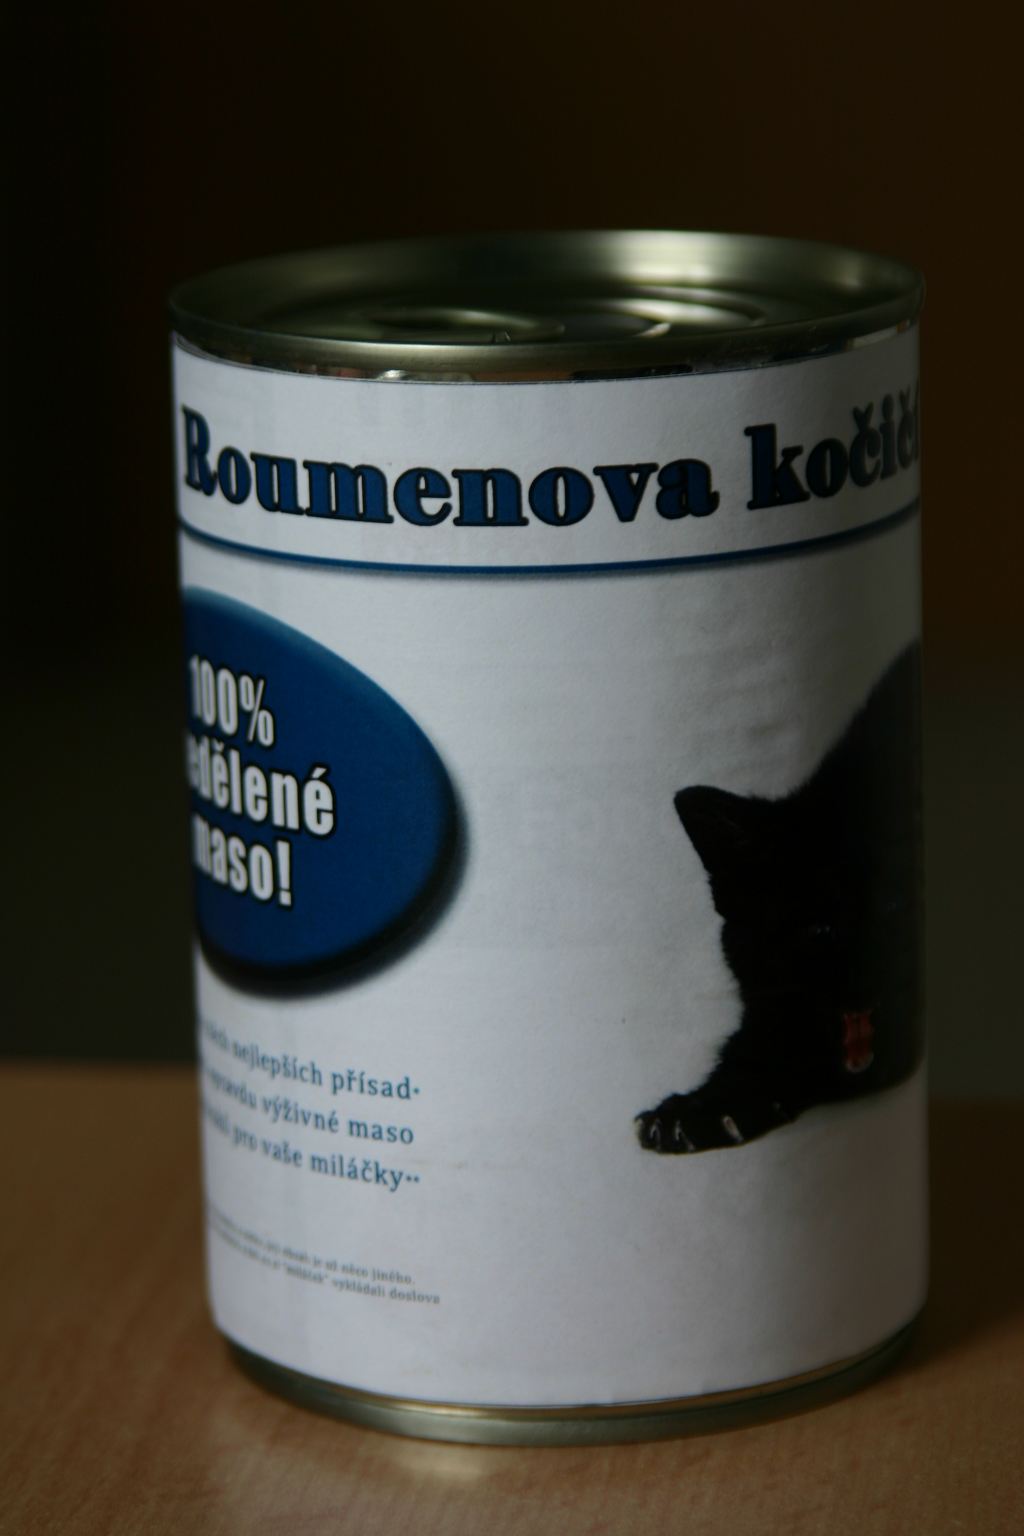 Obrázek Roumenova kocici konzerva